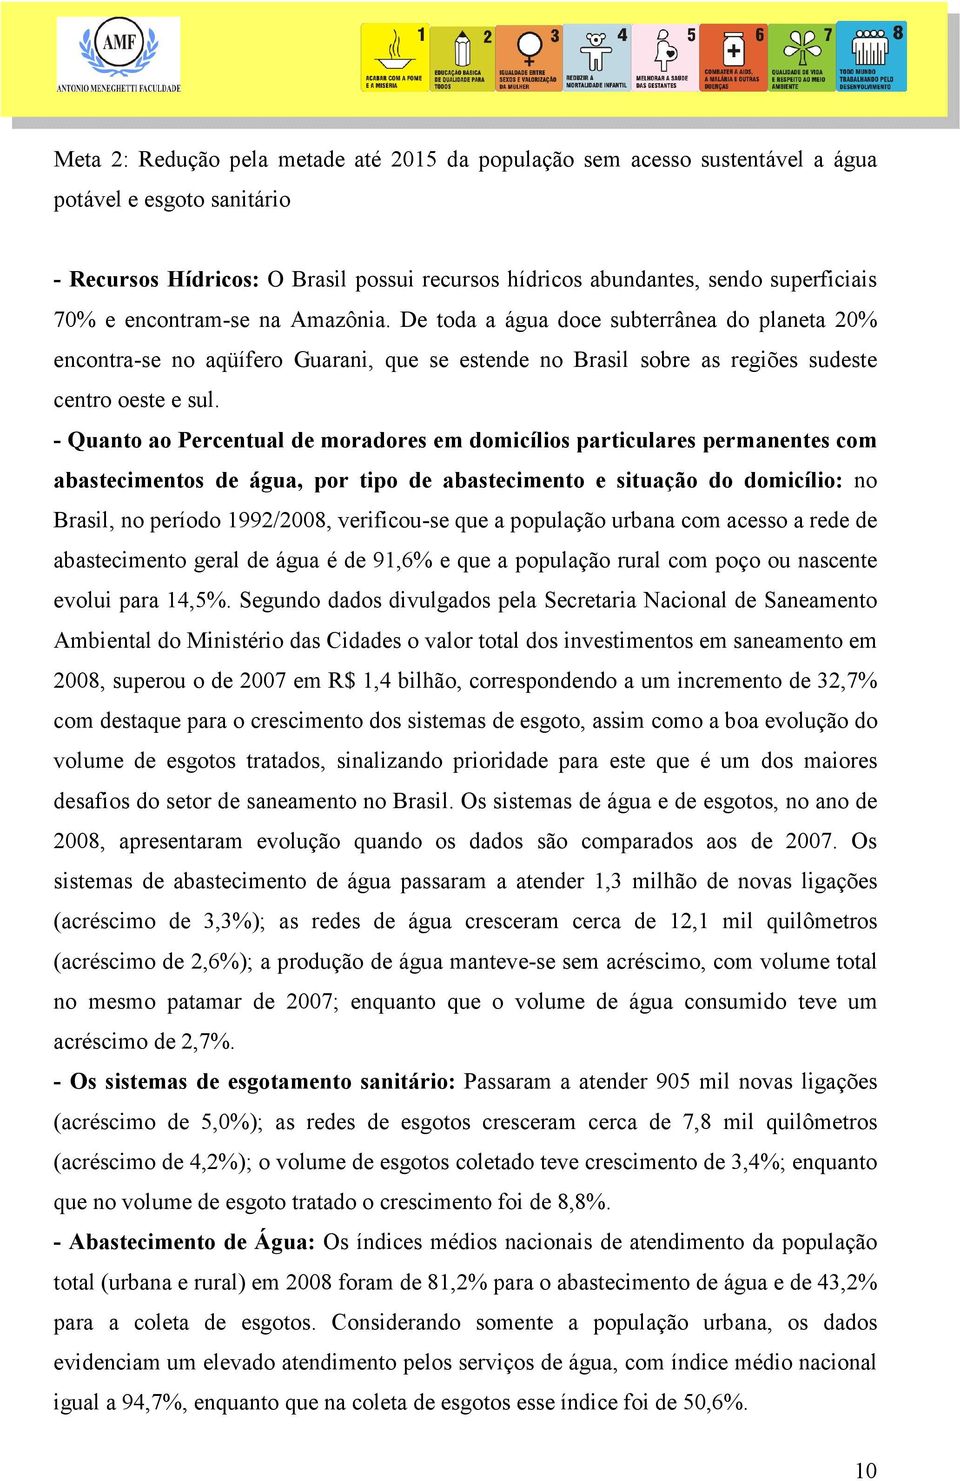 - Quanto ao Percentual de moradores em domicílios particulares permanentes com abastecimentos de água, por tipo de abastecimento e situação do domicílio: no Brasil, no período 1992/2008, verificou-se